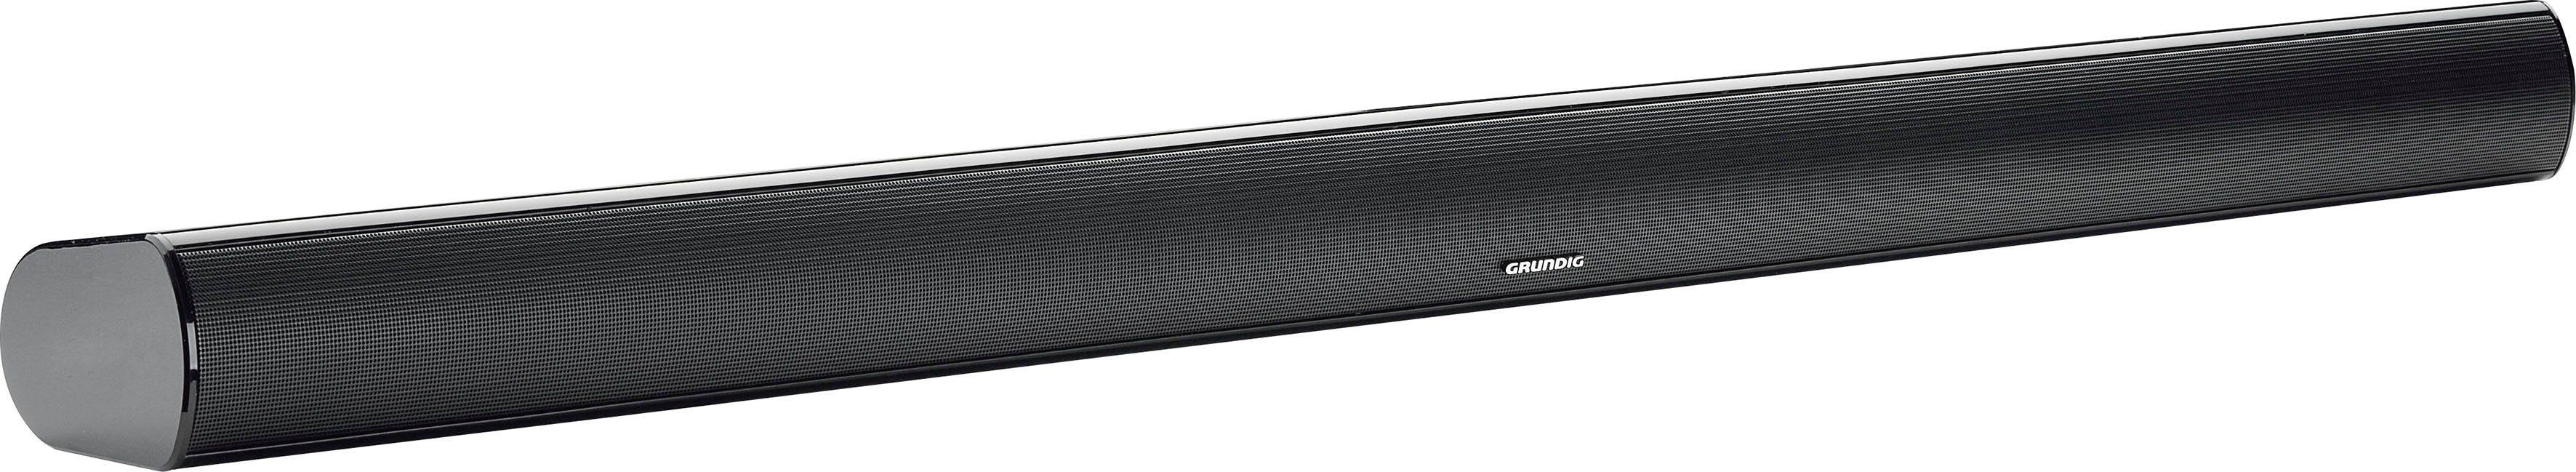 Grundig DSB Soundbar 950 schwarz 2.0 (Bluetooth, 40 W)